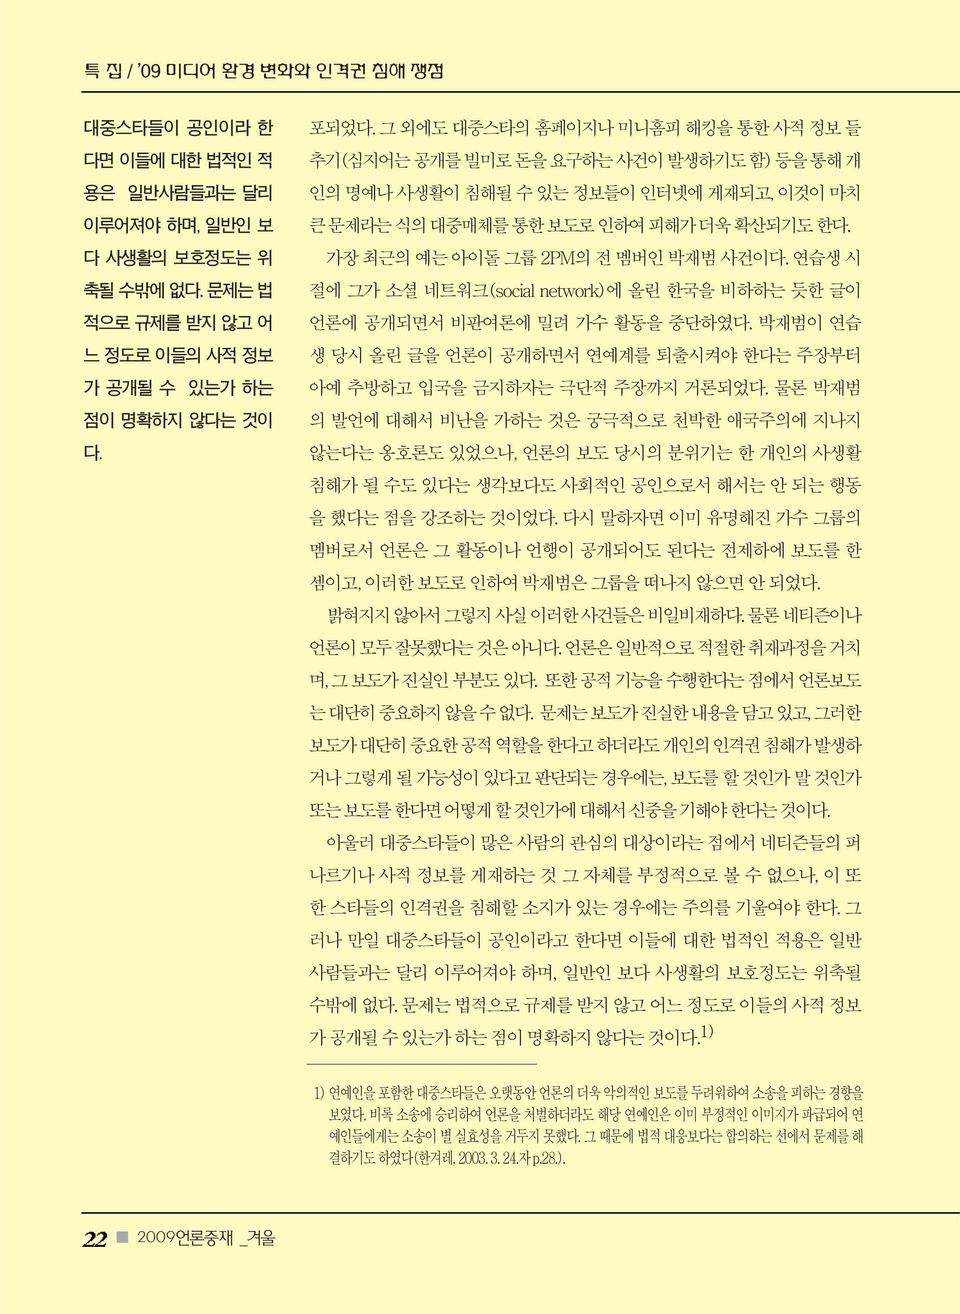 가장 최근의 예는 아이돌 그룹 2PM의 전 멤버인 박재범 사건이다. 연습생 시 절에 그가 소셜 네트워크(social network)에 올린 한국을 비하하는 듯한 글이 언론에 공개되면서 비판여론에 밀려 가수 활동을 중단하였다.